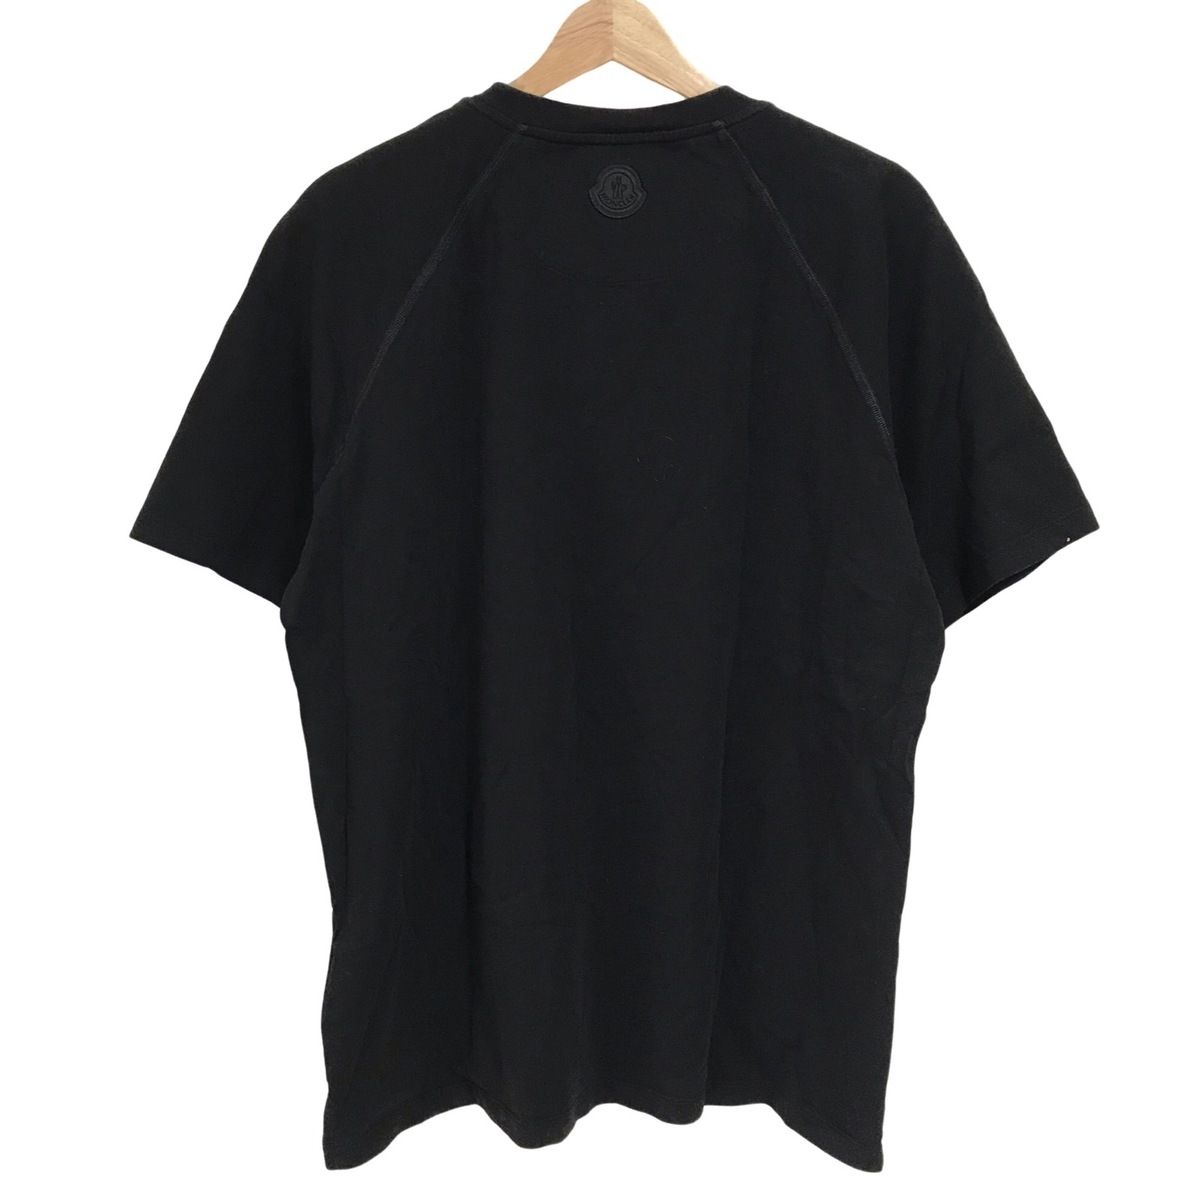 MONCLER(モンクレール) 半袖Tシャツ サイズL メンズ美品 MAGLIA 黒×白